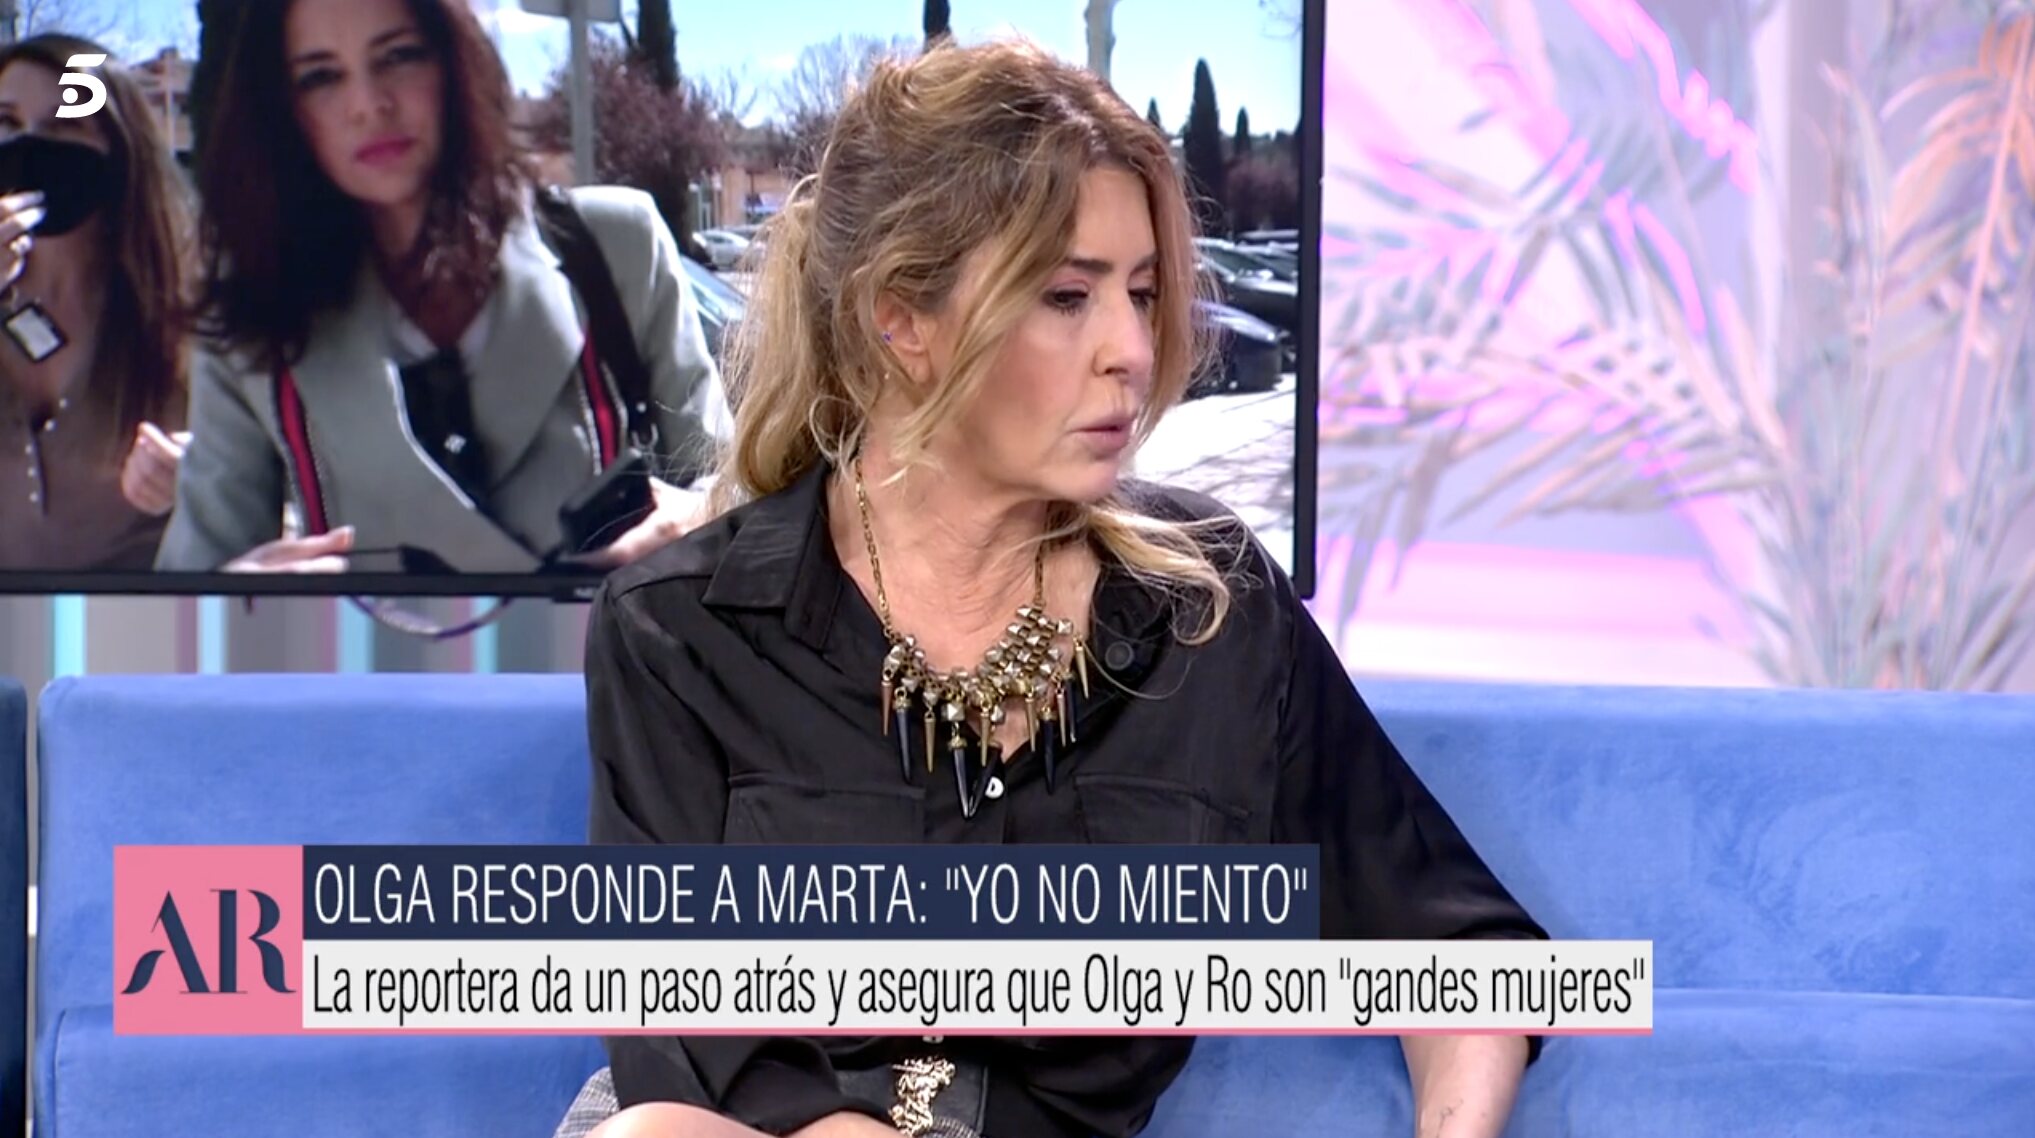 Marisa Martín-Blázquez es conocedora de la situación | Foto: Telecinco.es